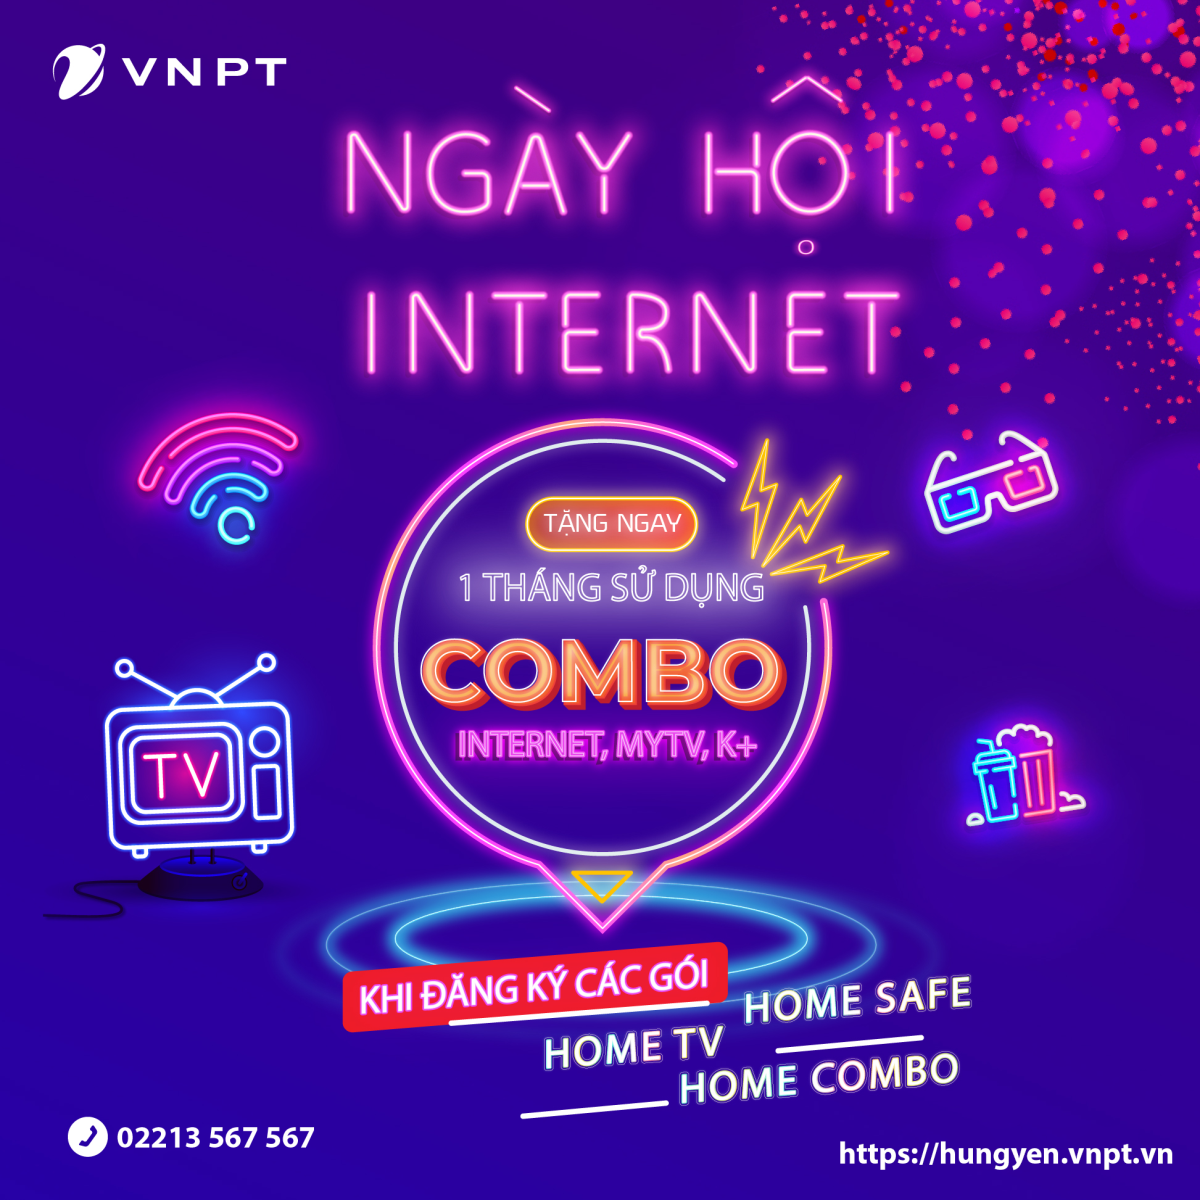 Khuyến mại chào hè, VNPT tặng ngay 01 tháng combo Internet – Truyền hình – K+